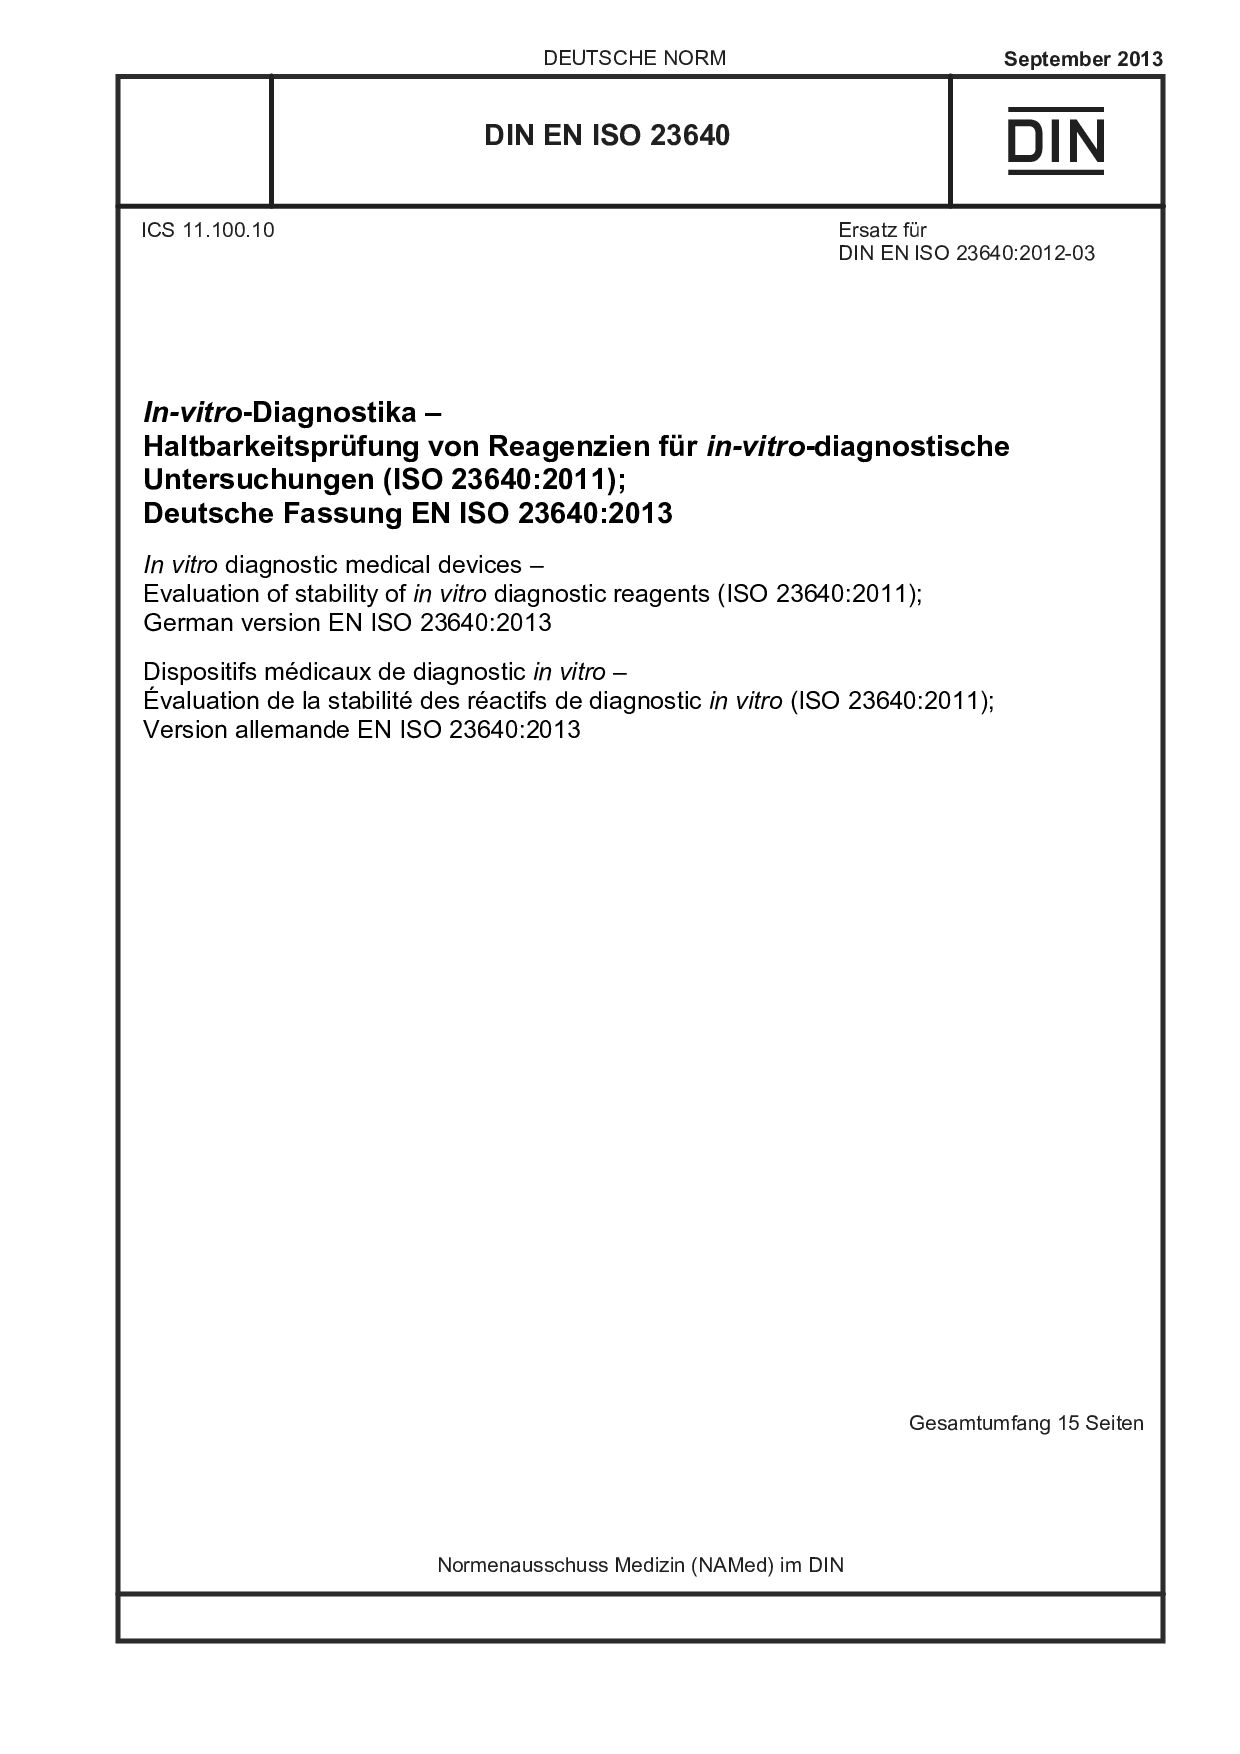 DIN EN ISO 23640:2013封面图